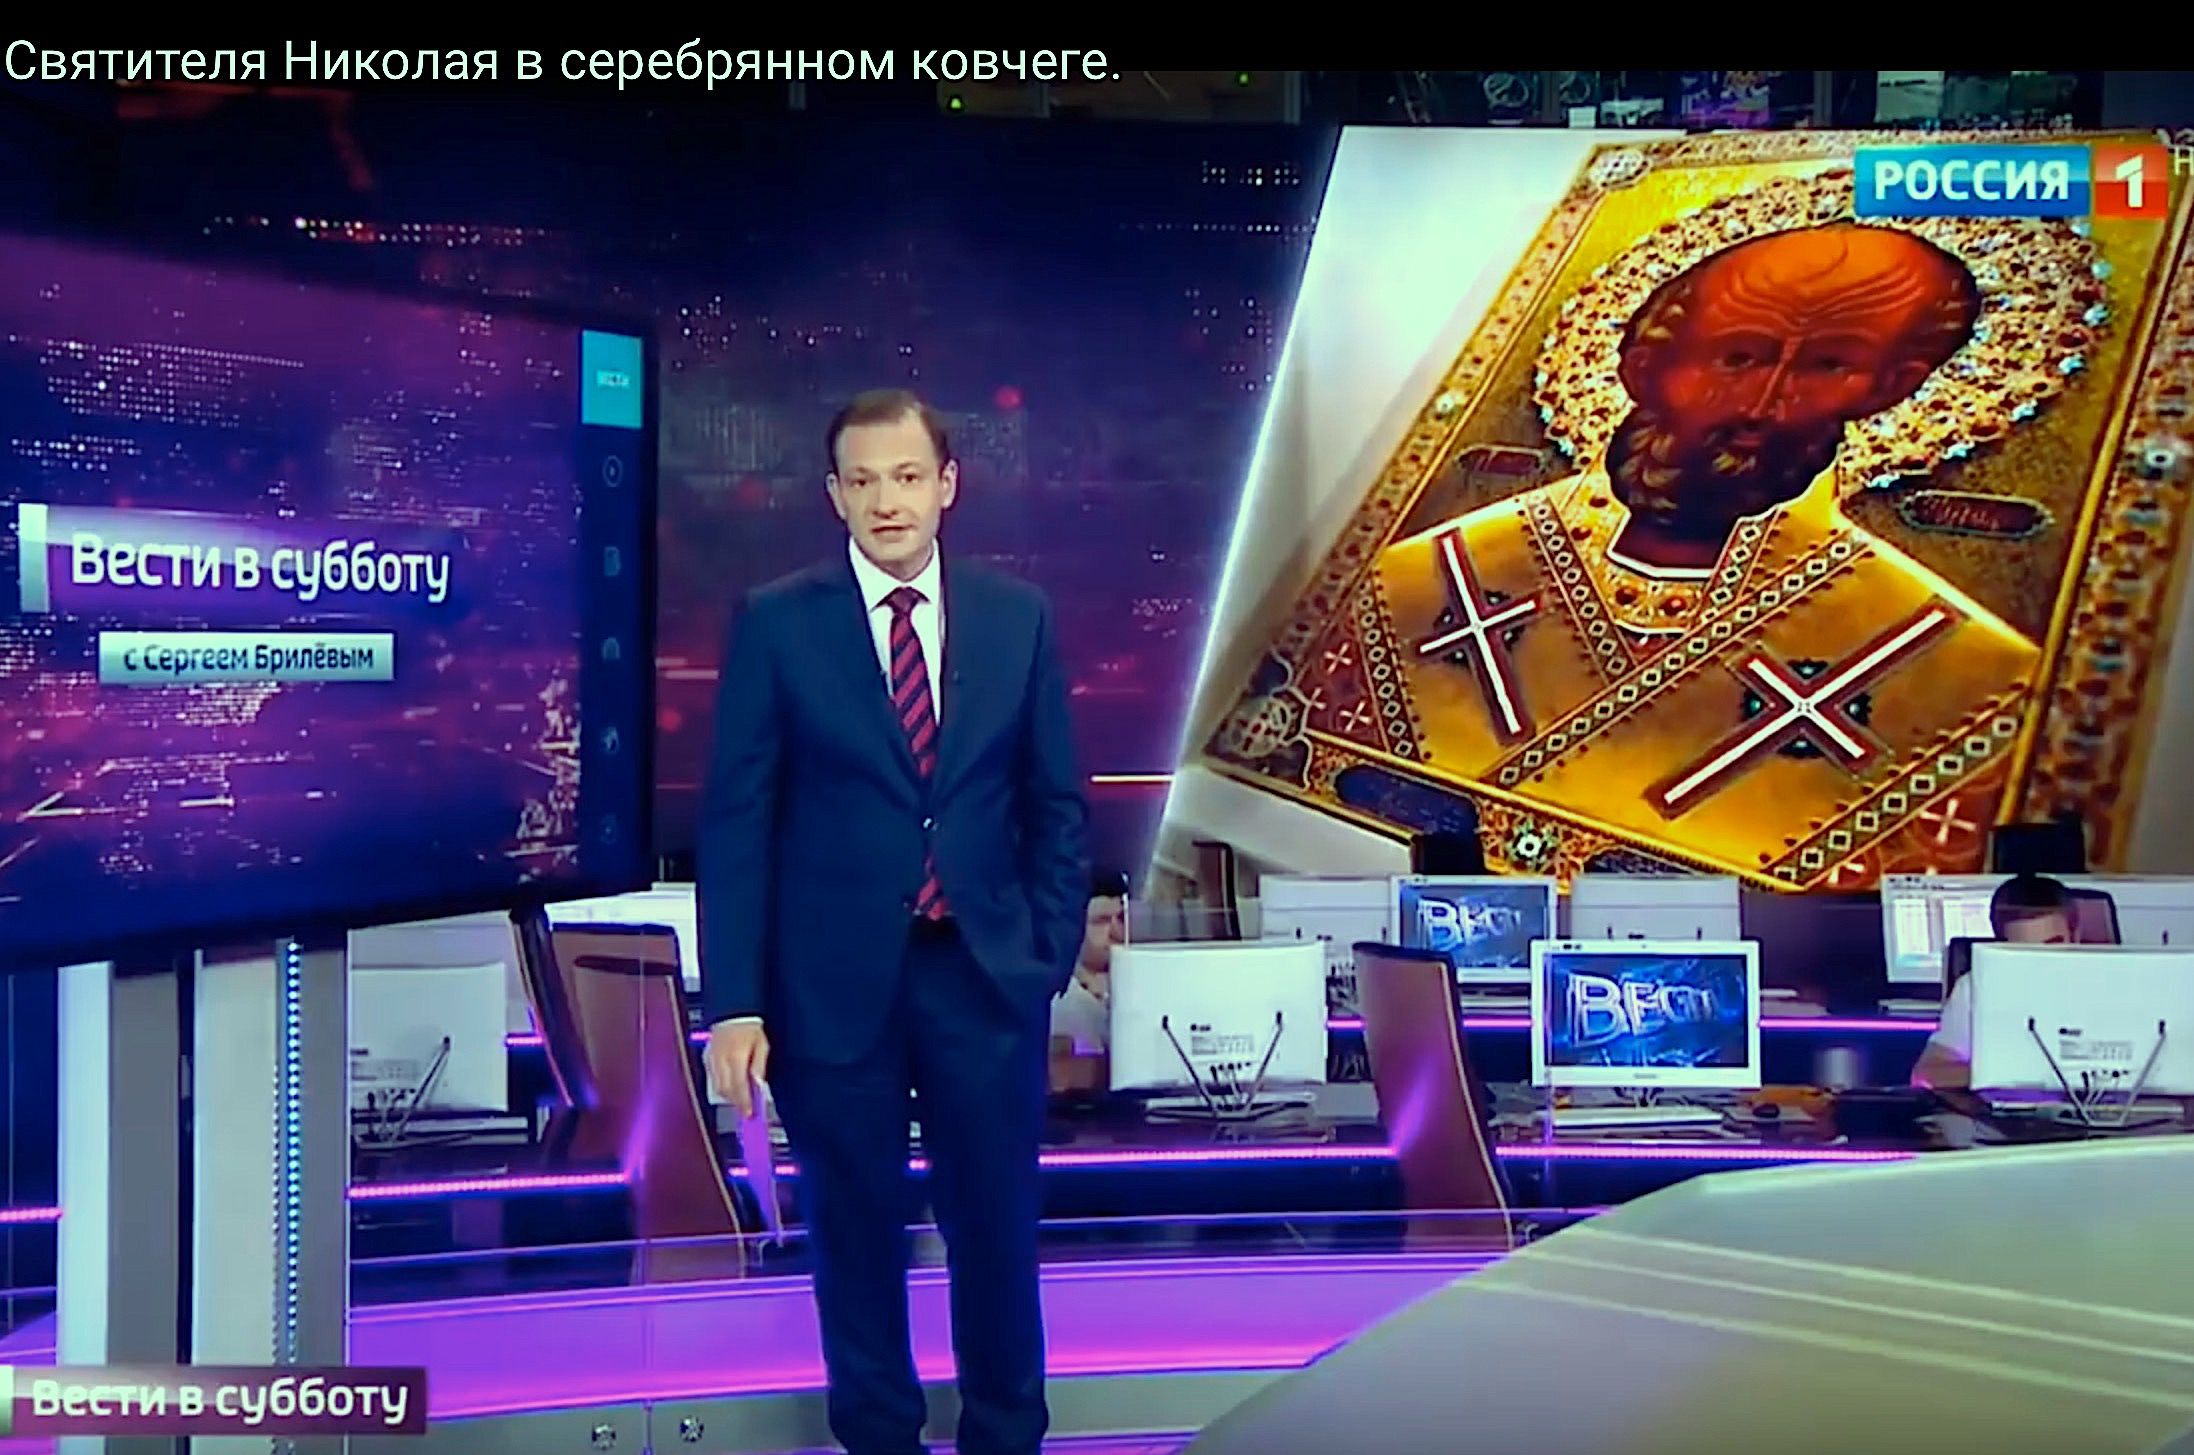 La visita de las reliquias difundida por la televisión rusa